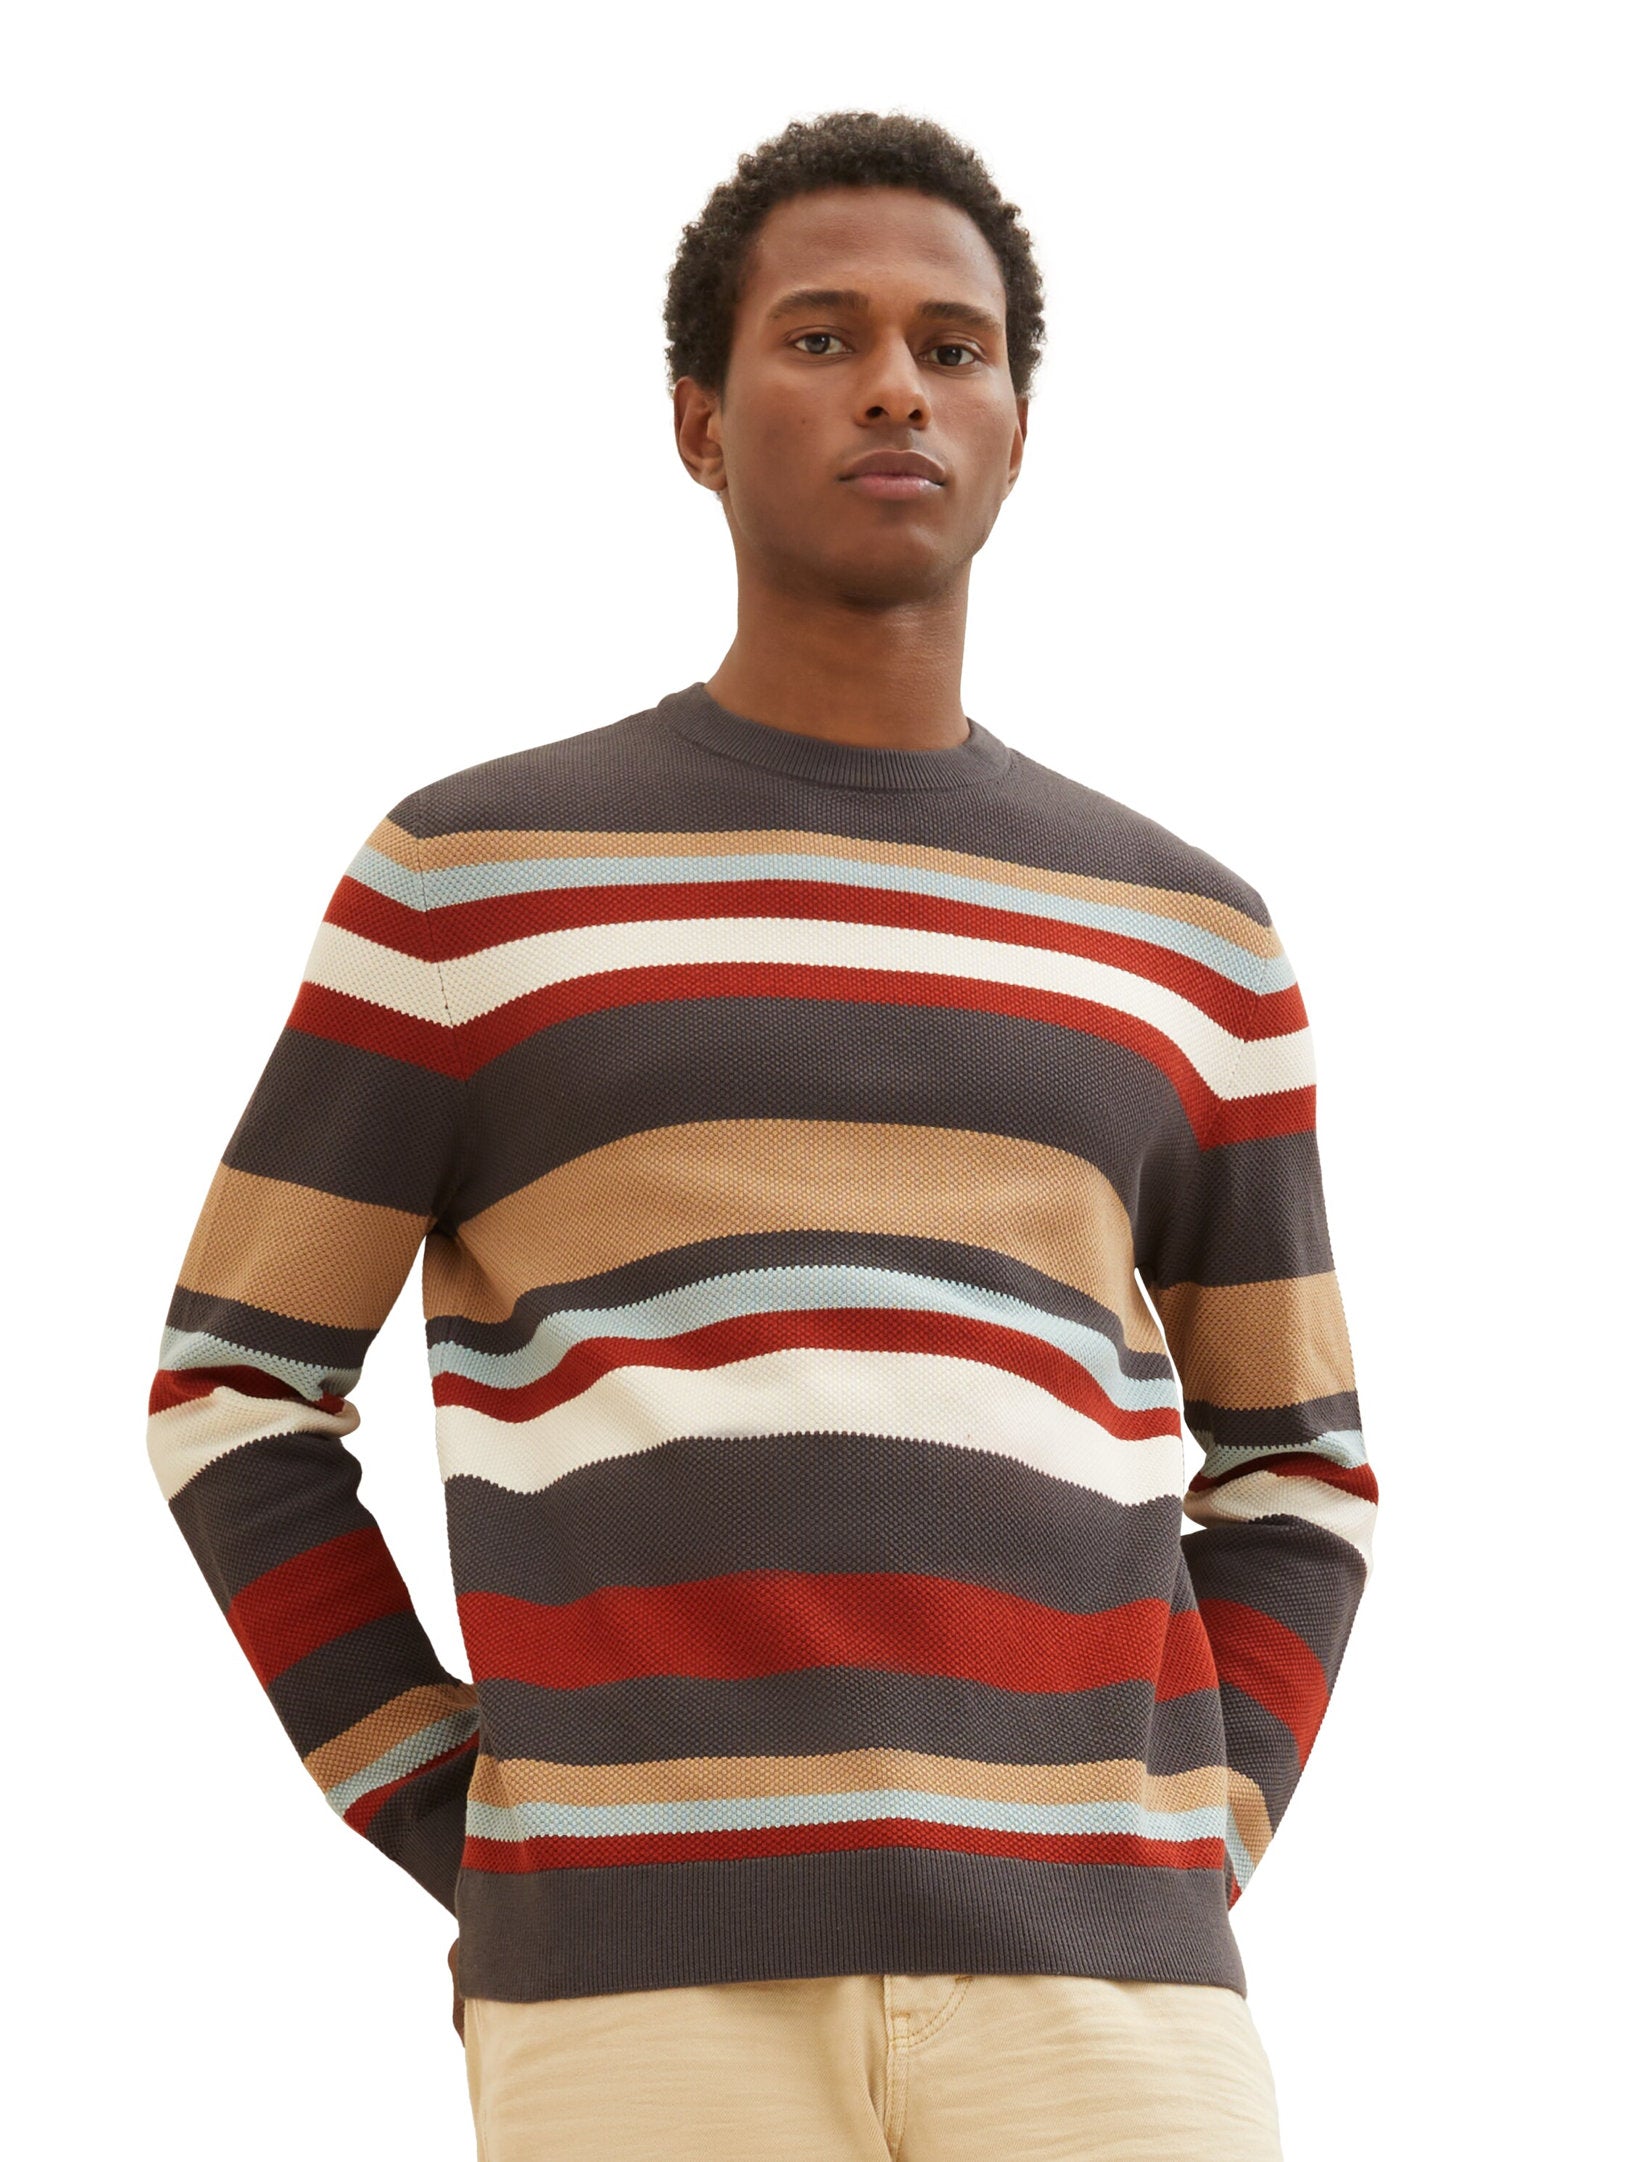 Striped Pullover With Round Neckline_1038200_32758_02